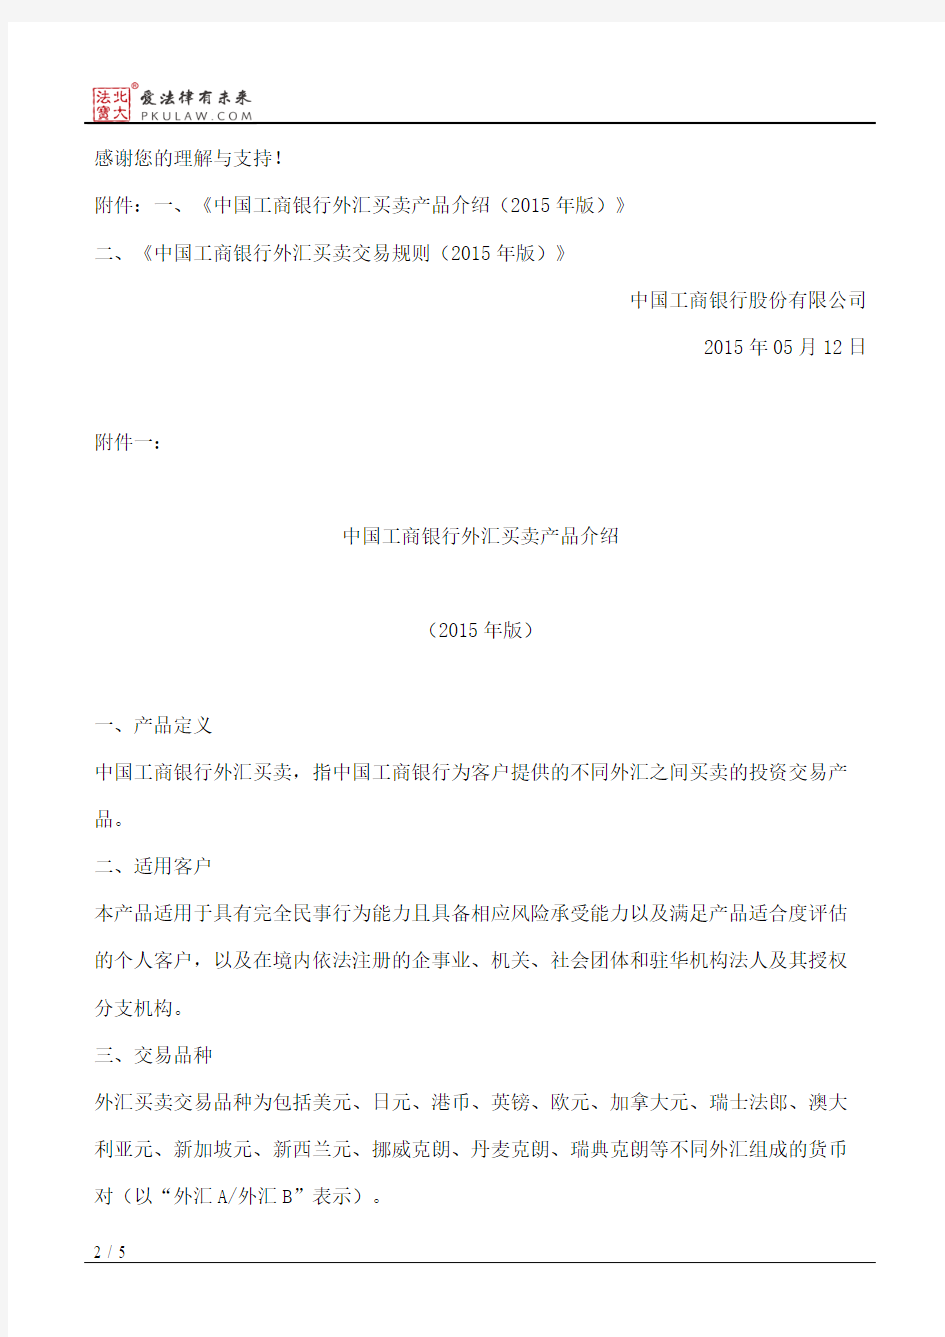 中国工商银行股份有限公司关于修改外汇买卖客户文档的通告(2015)